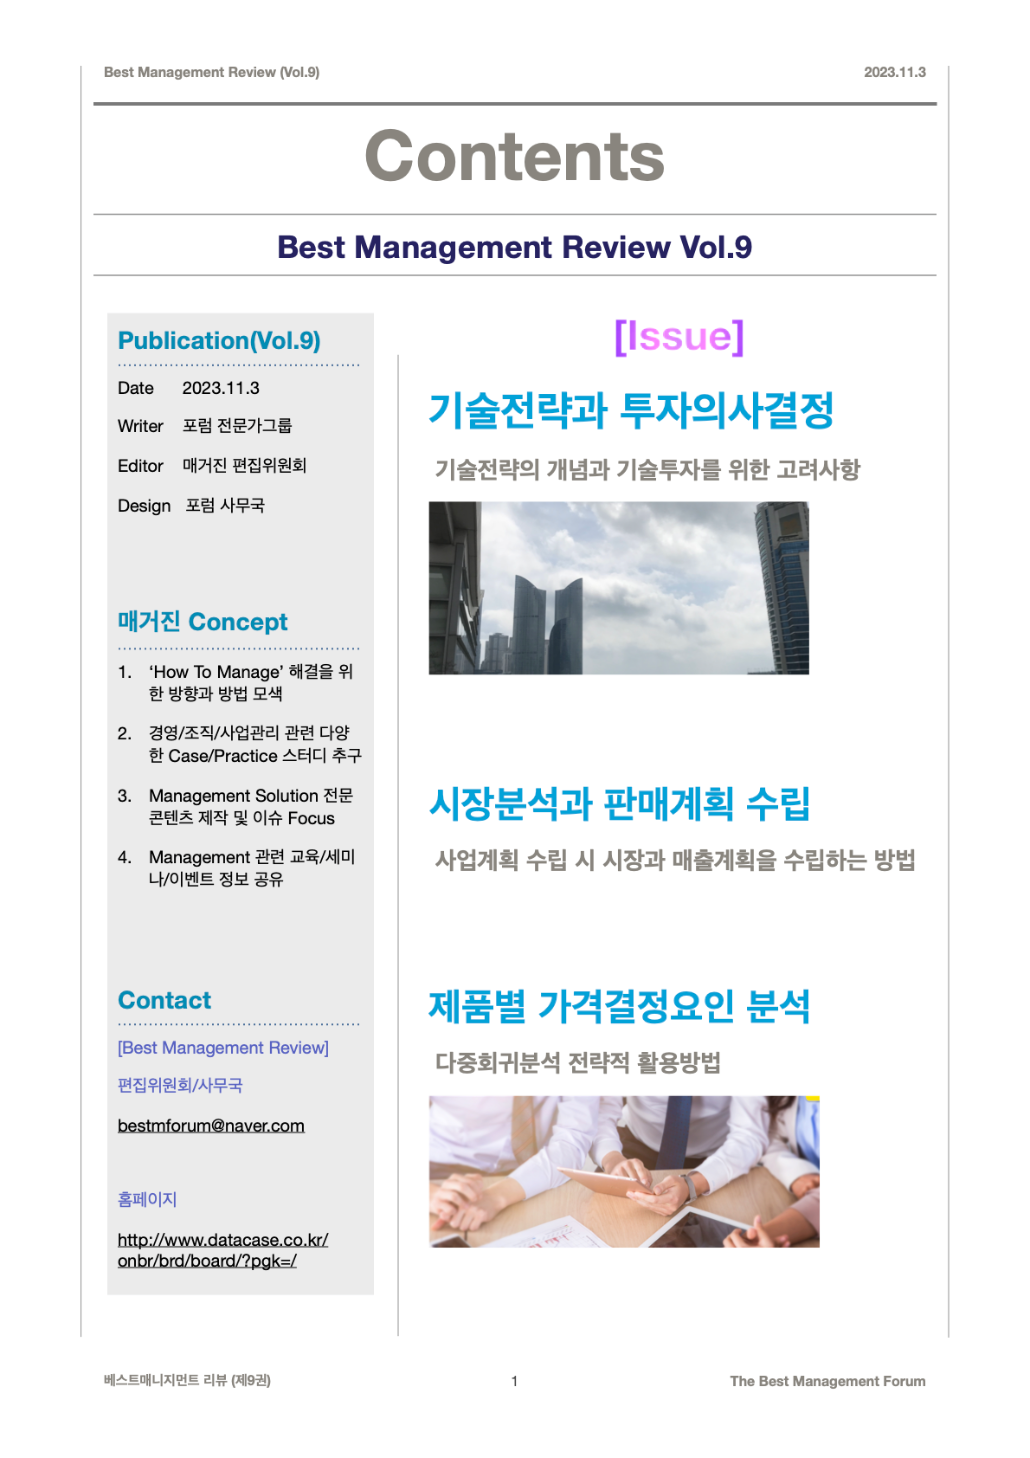 Best Management Review Vol.9 Contents(2023.11.3)